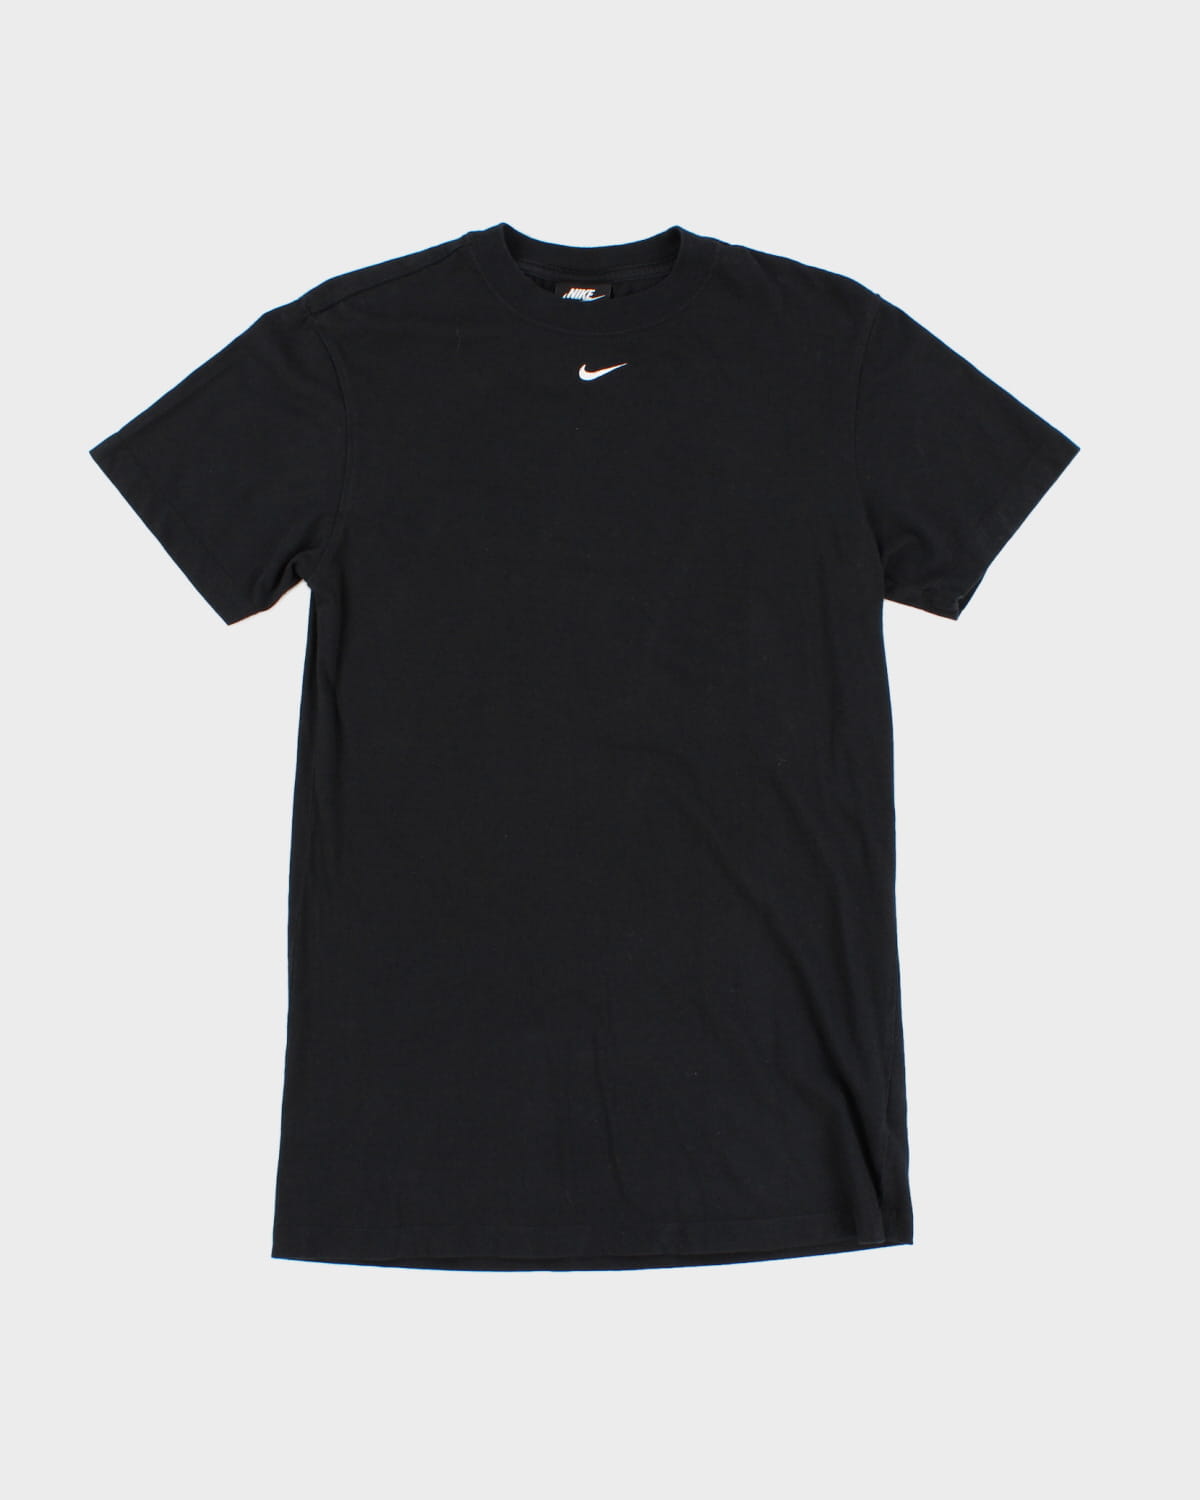 Classic Nike Tick T-Shirt - XS